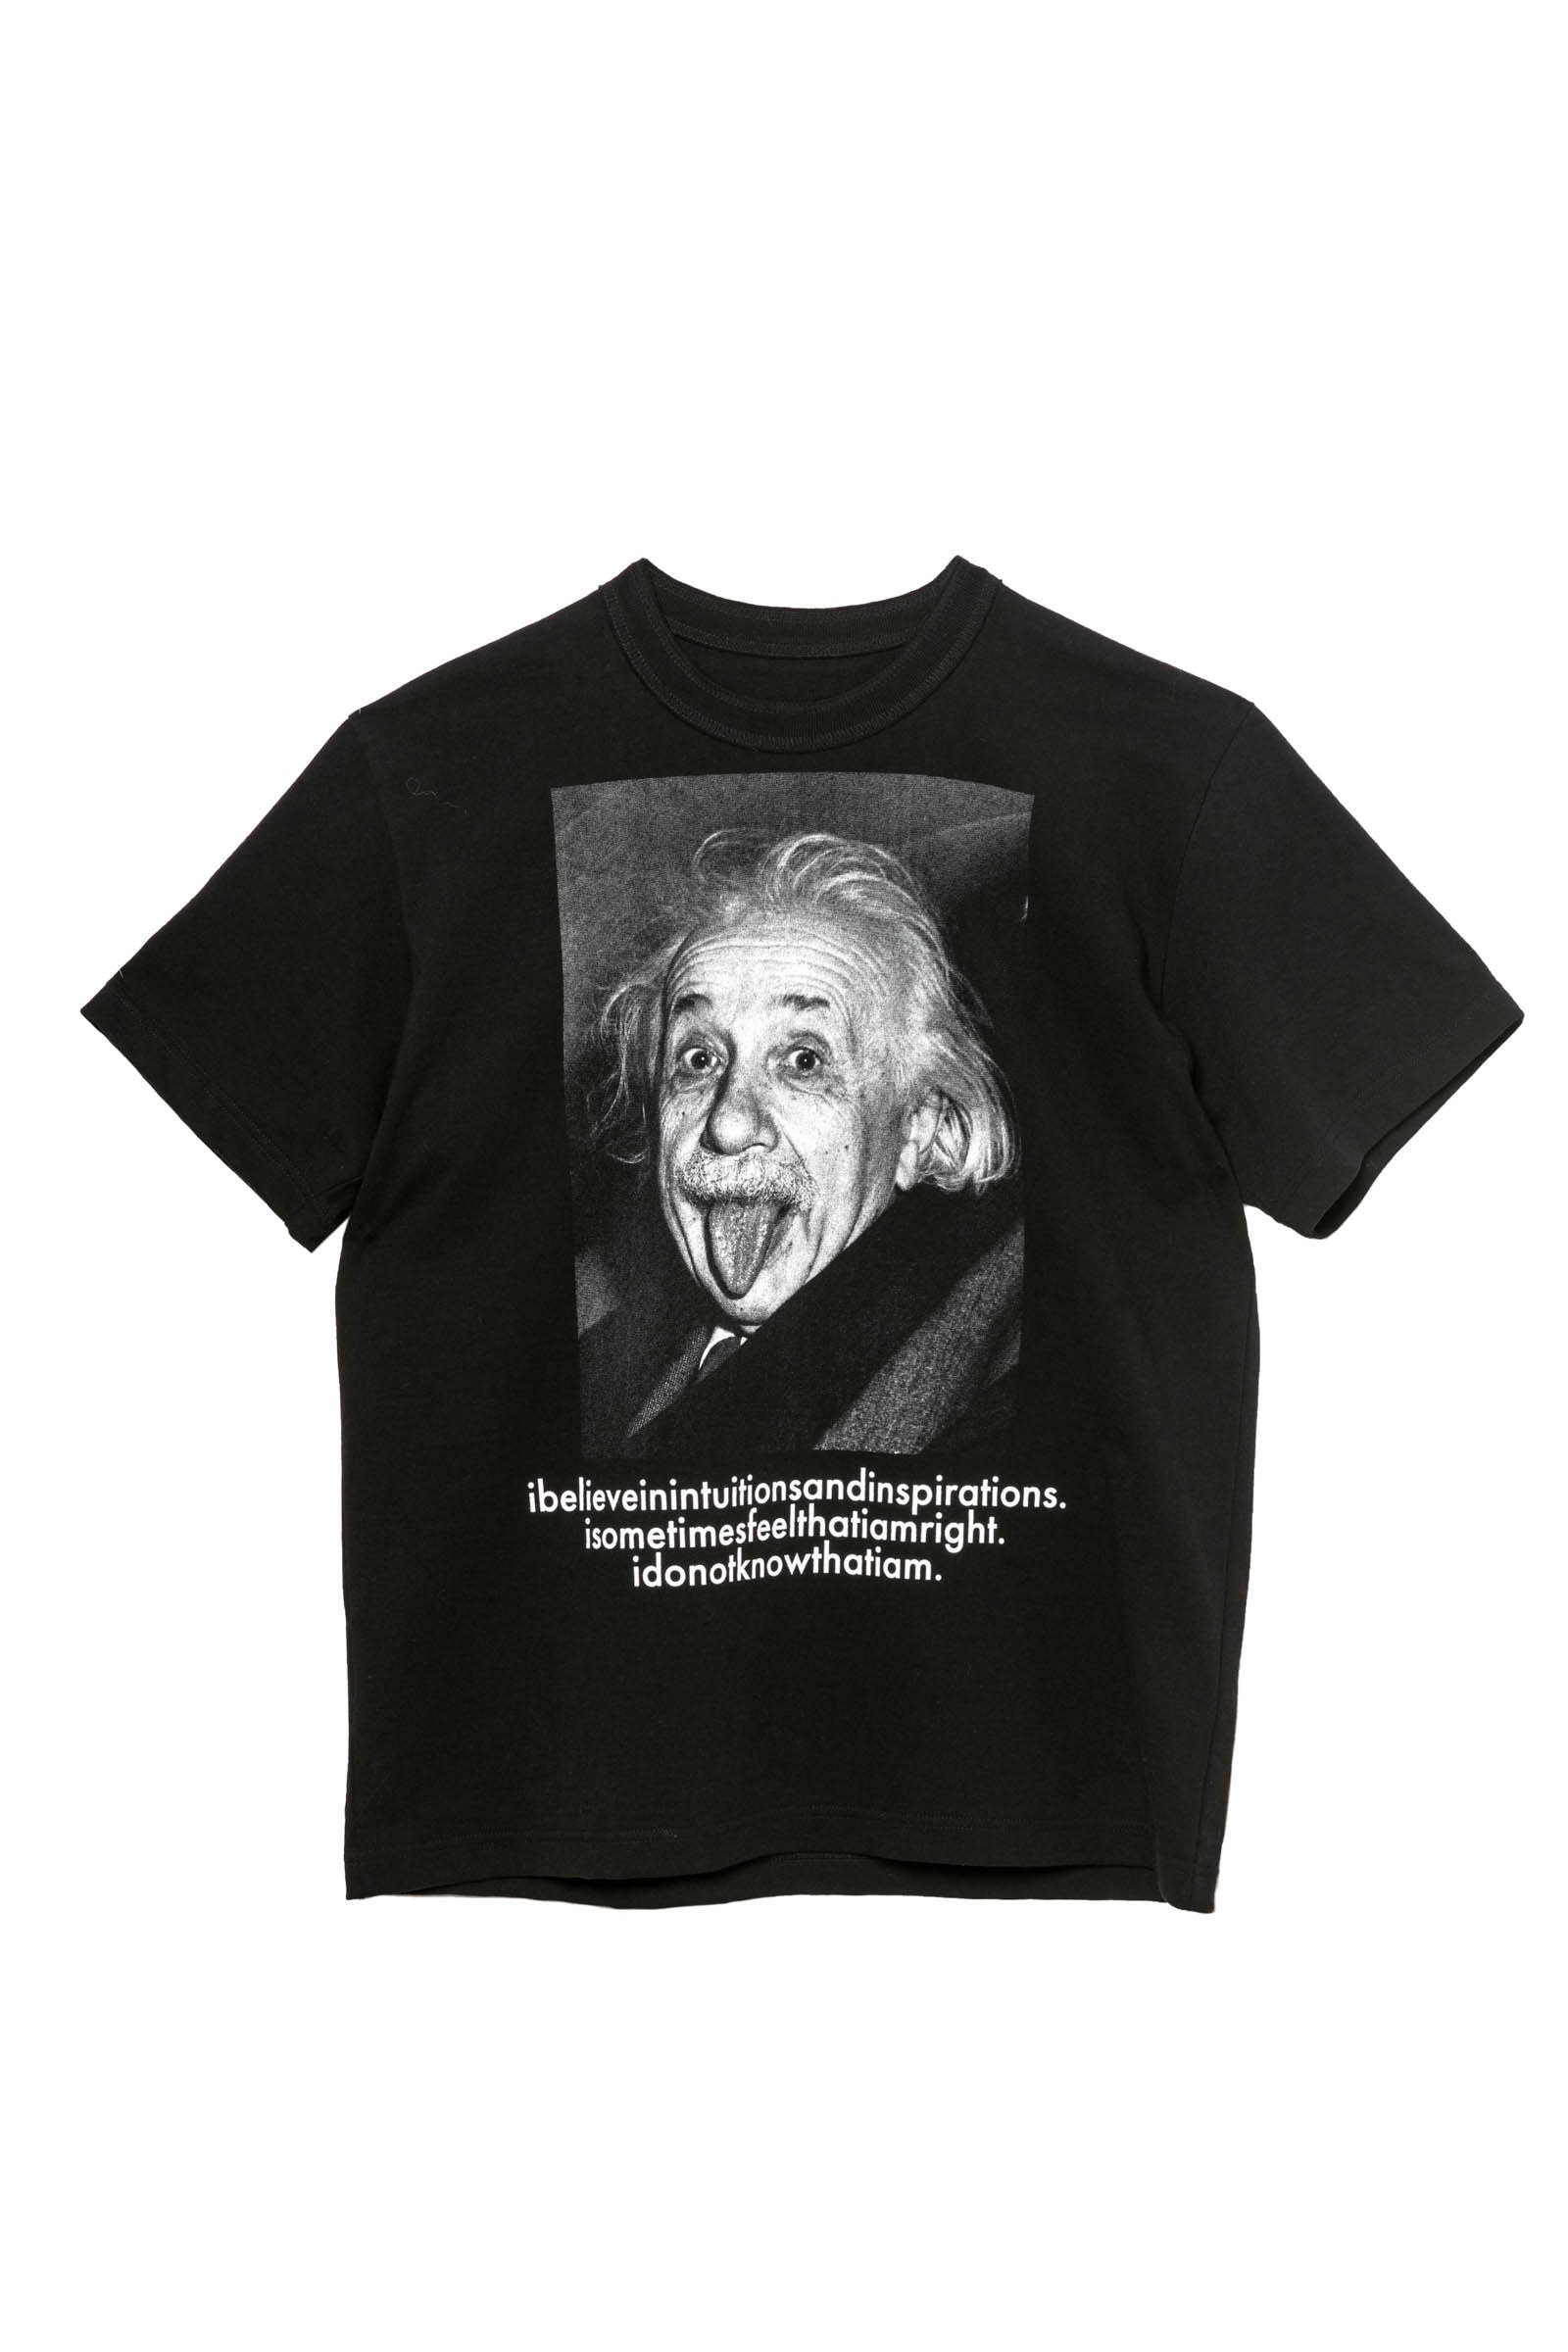 サカイ がアインシュタインモチーフのtシャツとフーディー発売 ポートレートと名言をプリント